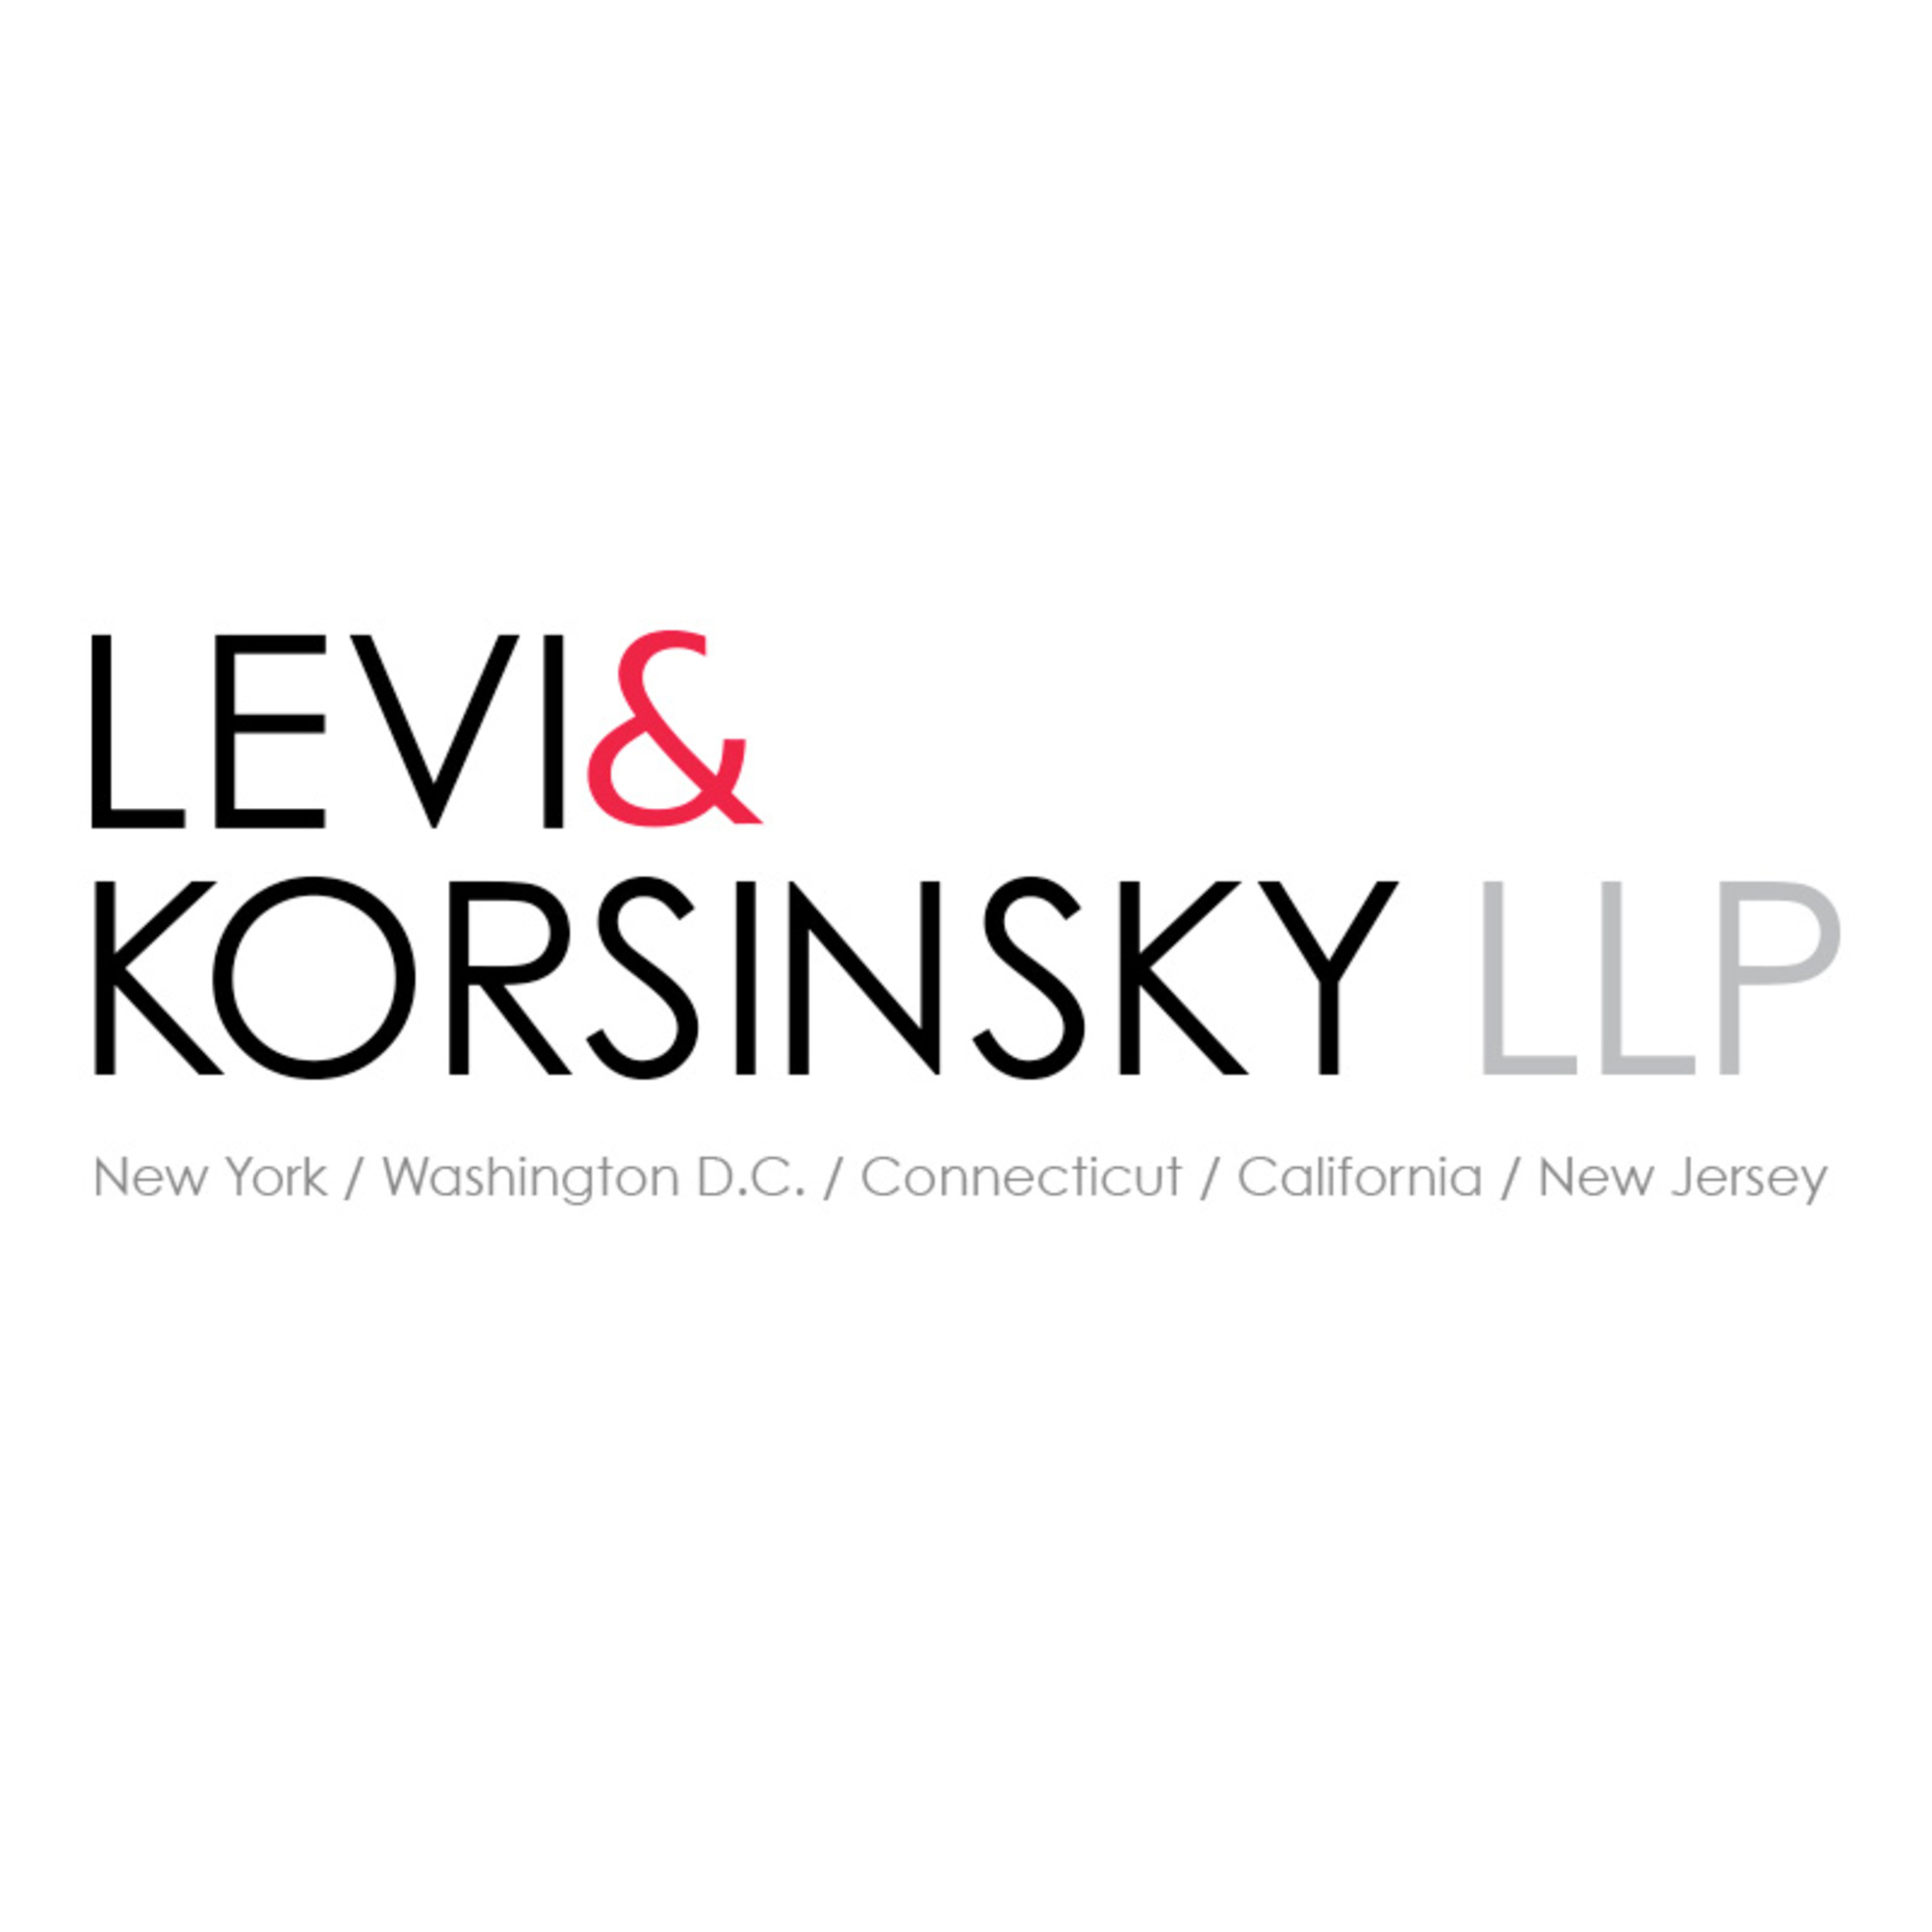 Levi & Korsinsky, LLP